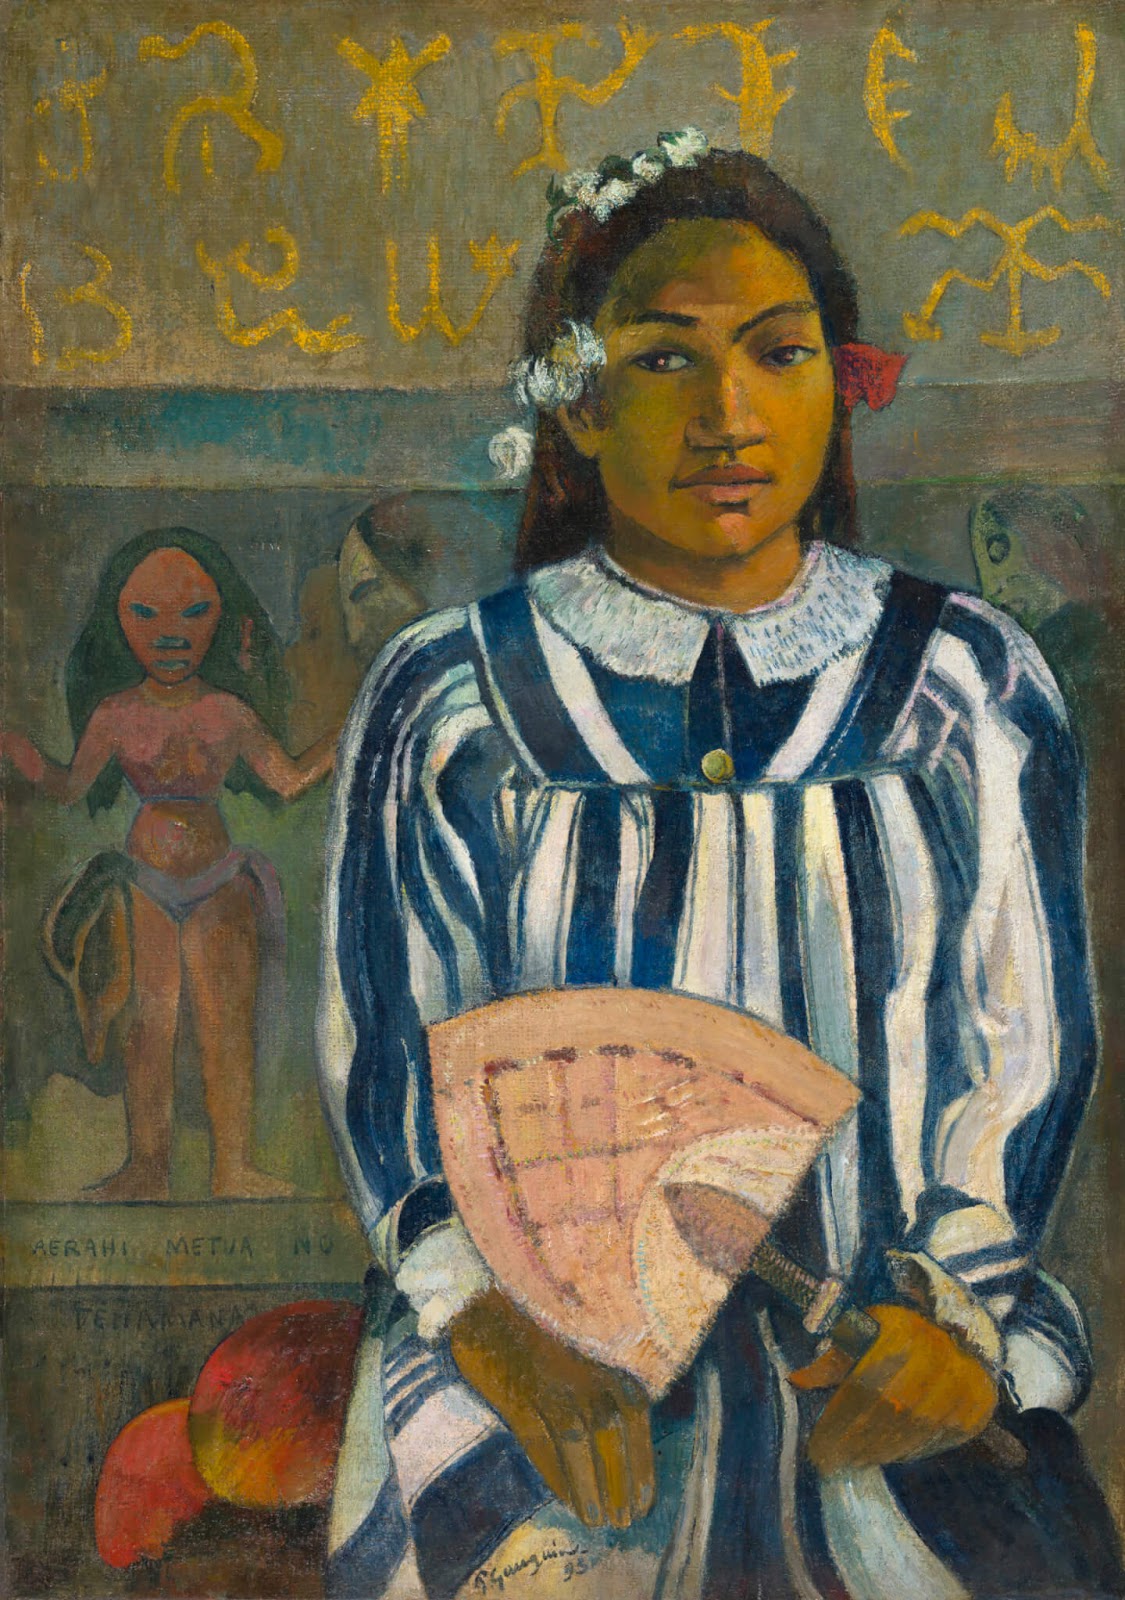 Paul+Gauguin-1848-1903 (465).jpg